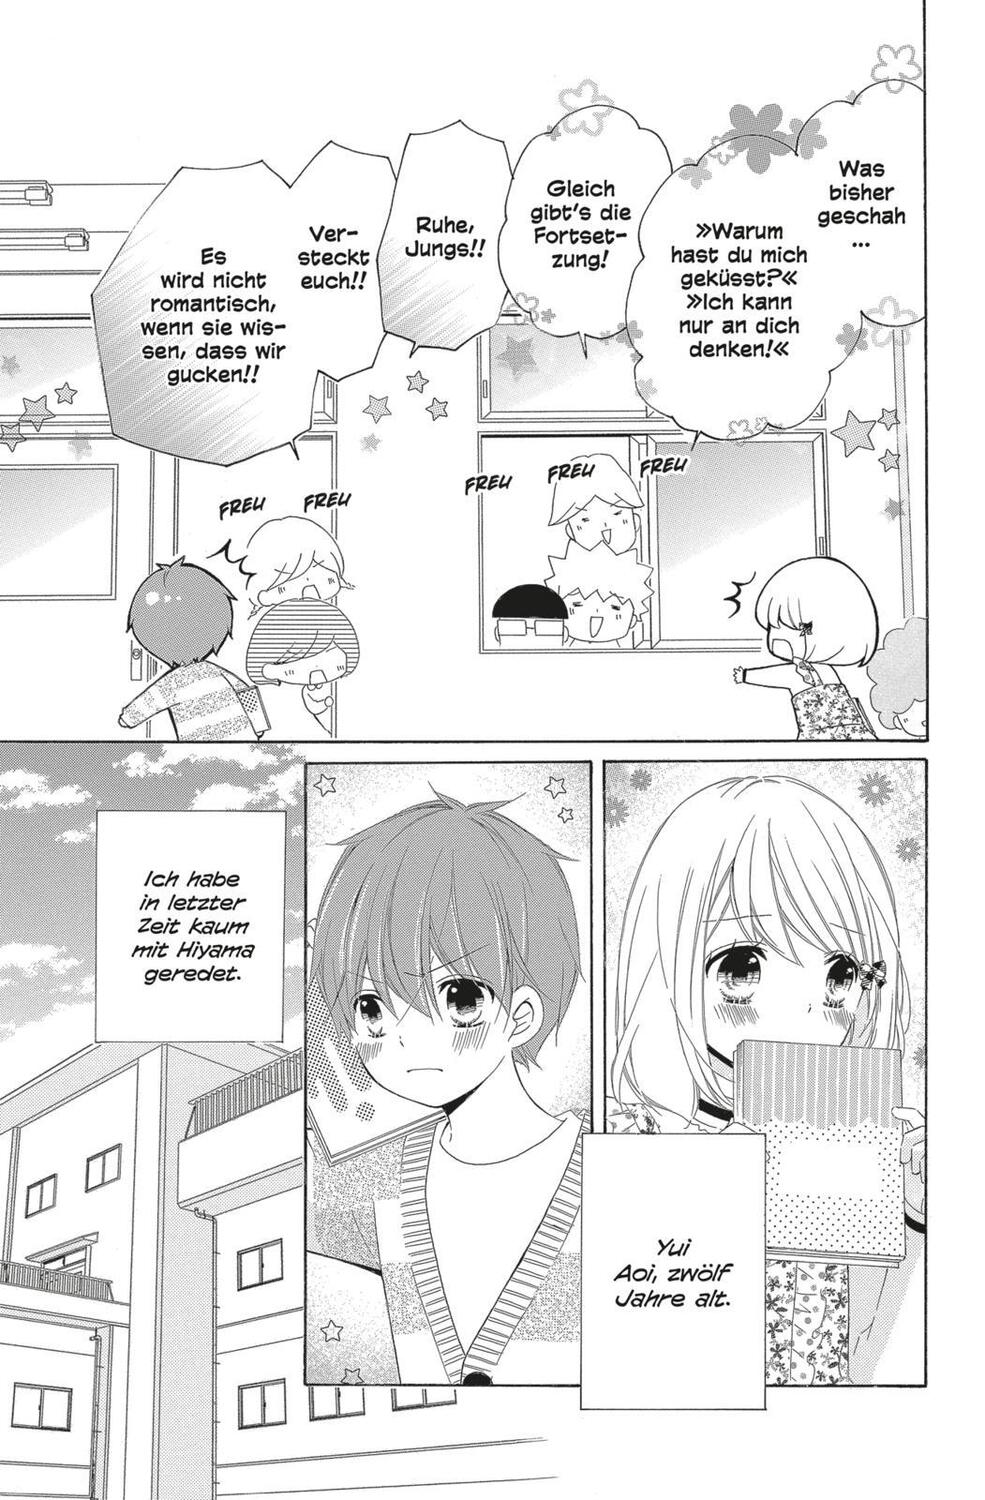 Bild: 9783551758705 | 12 Jahre 16 | Süße Manga-Liebesgeschichte für Mädchen ab 10 Jahren